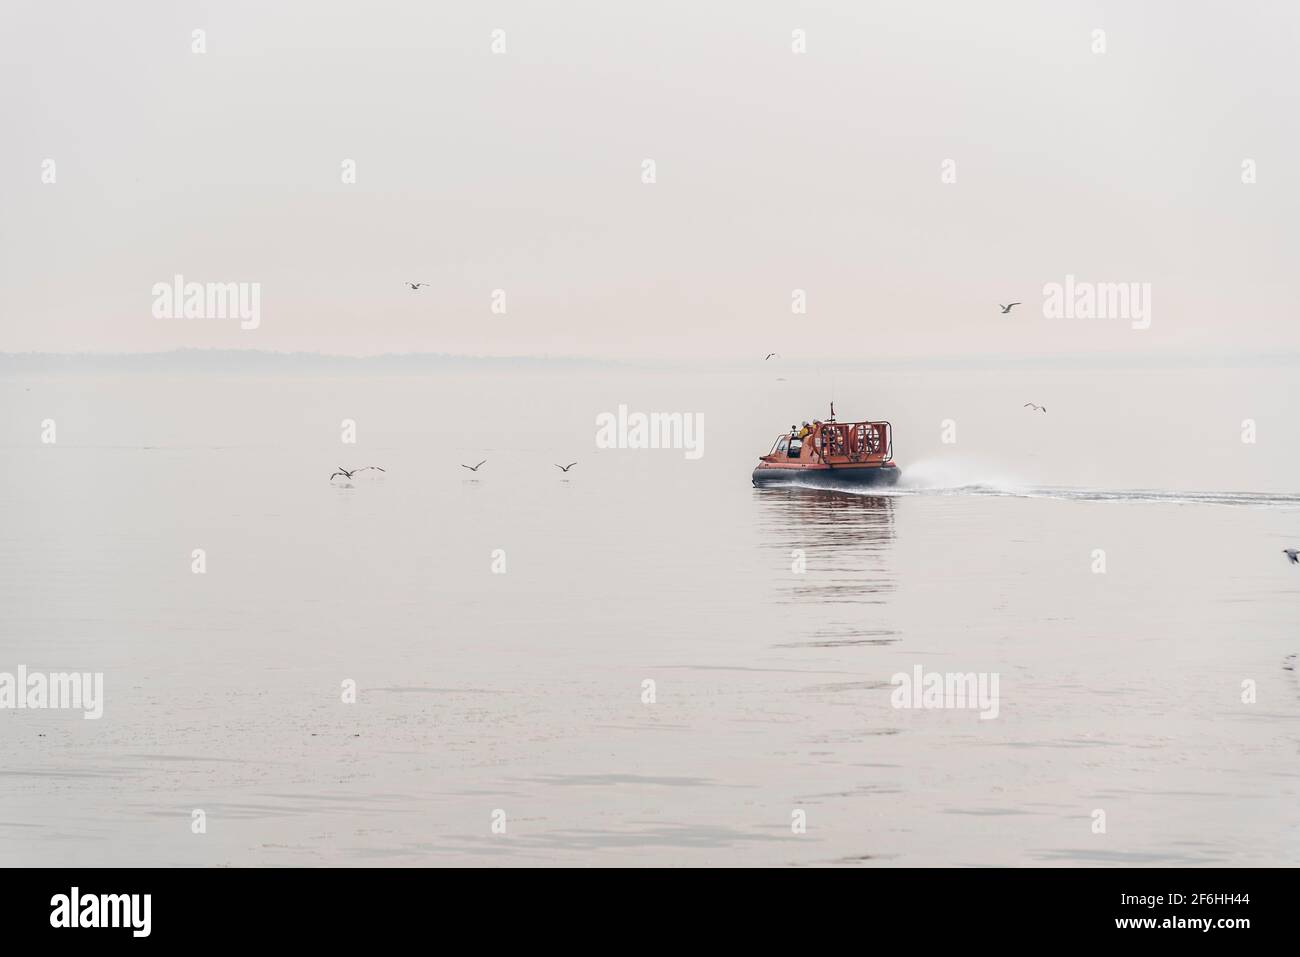 RNLI Hovercraft in Southend on Sea, Essex, Großbritannien, auf dem Weg in eine neblige Themse-Mündung. Unmerkliche Whiteout-Funktion Stockfoto